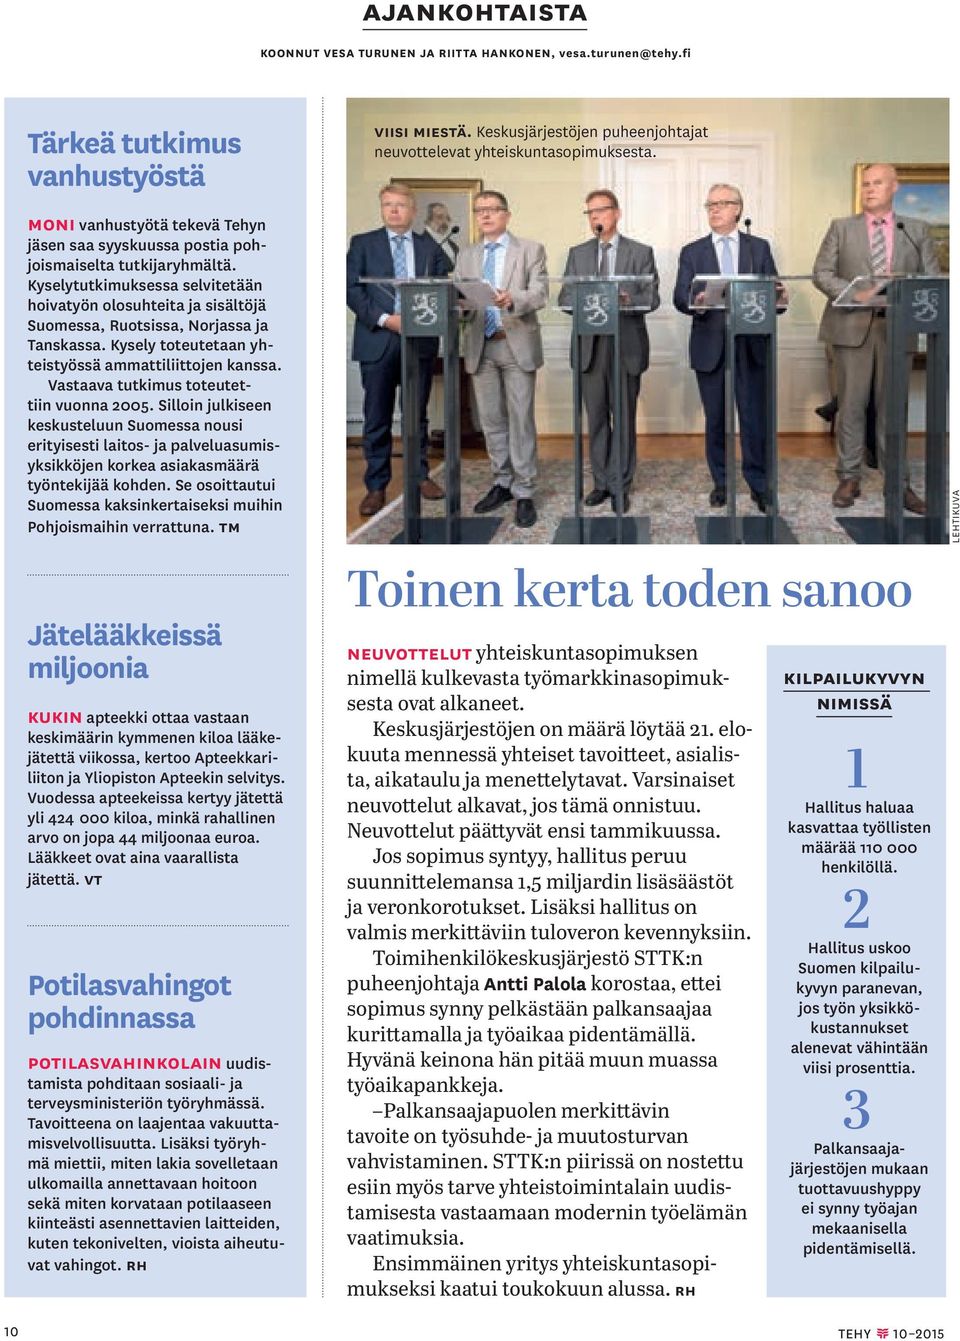 Vastaava tutkimus toteutettiin vuonna 2005. Silloin julkiseen keskusteluun Suomessa nousi erityisesti laitos- ja palveluasumisyksikköjen korkea asiakasmäärä työntekijää kohden.